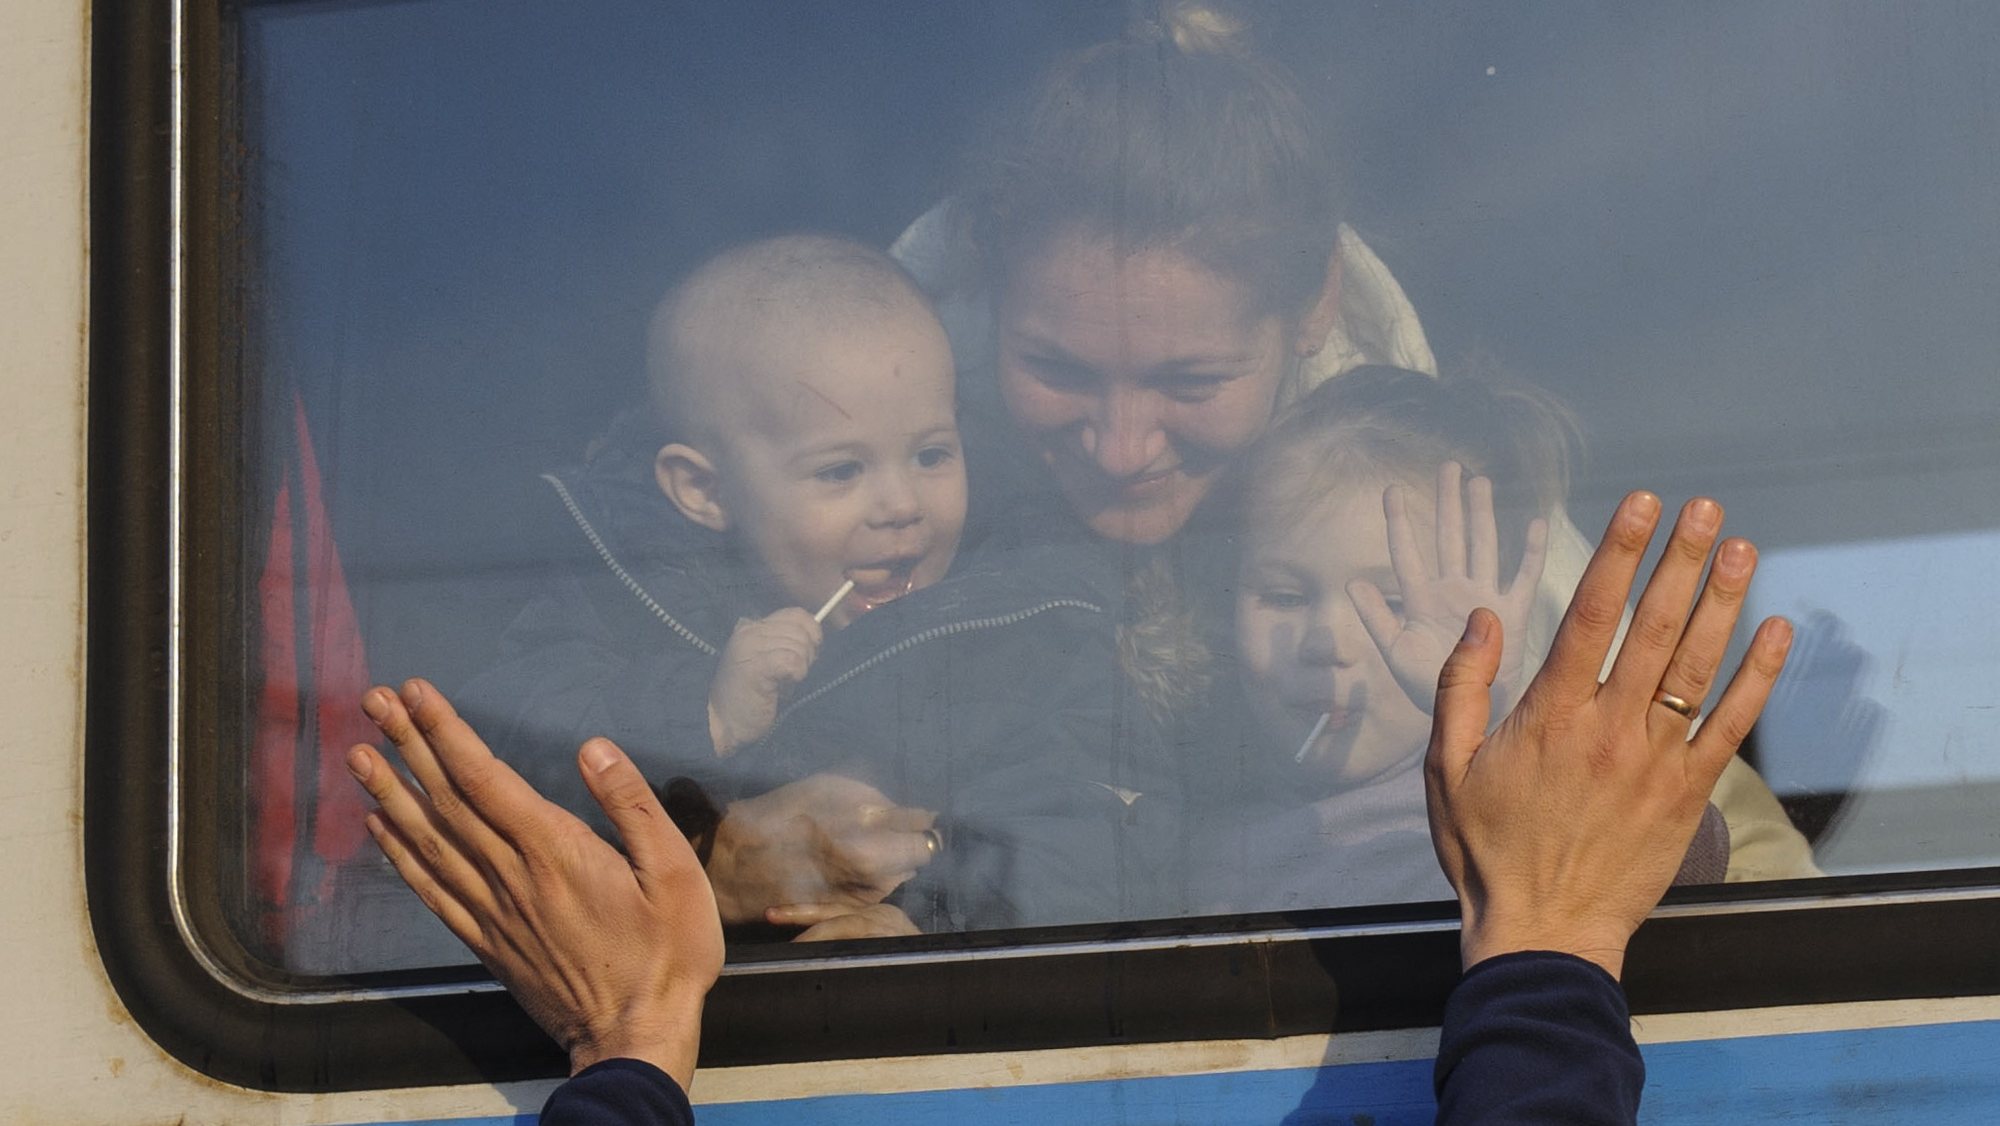 Refugiados ucranianos partem de comboio para a Polónia. Lviv, Ucrânia, 15 de março de 2022